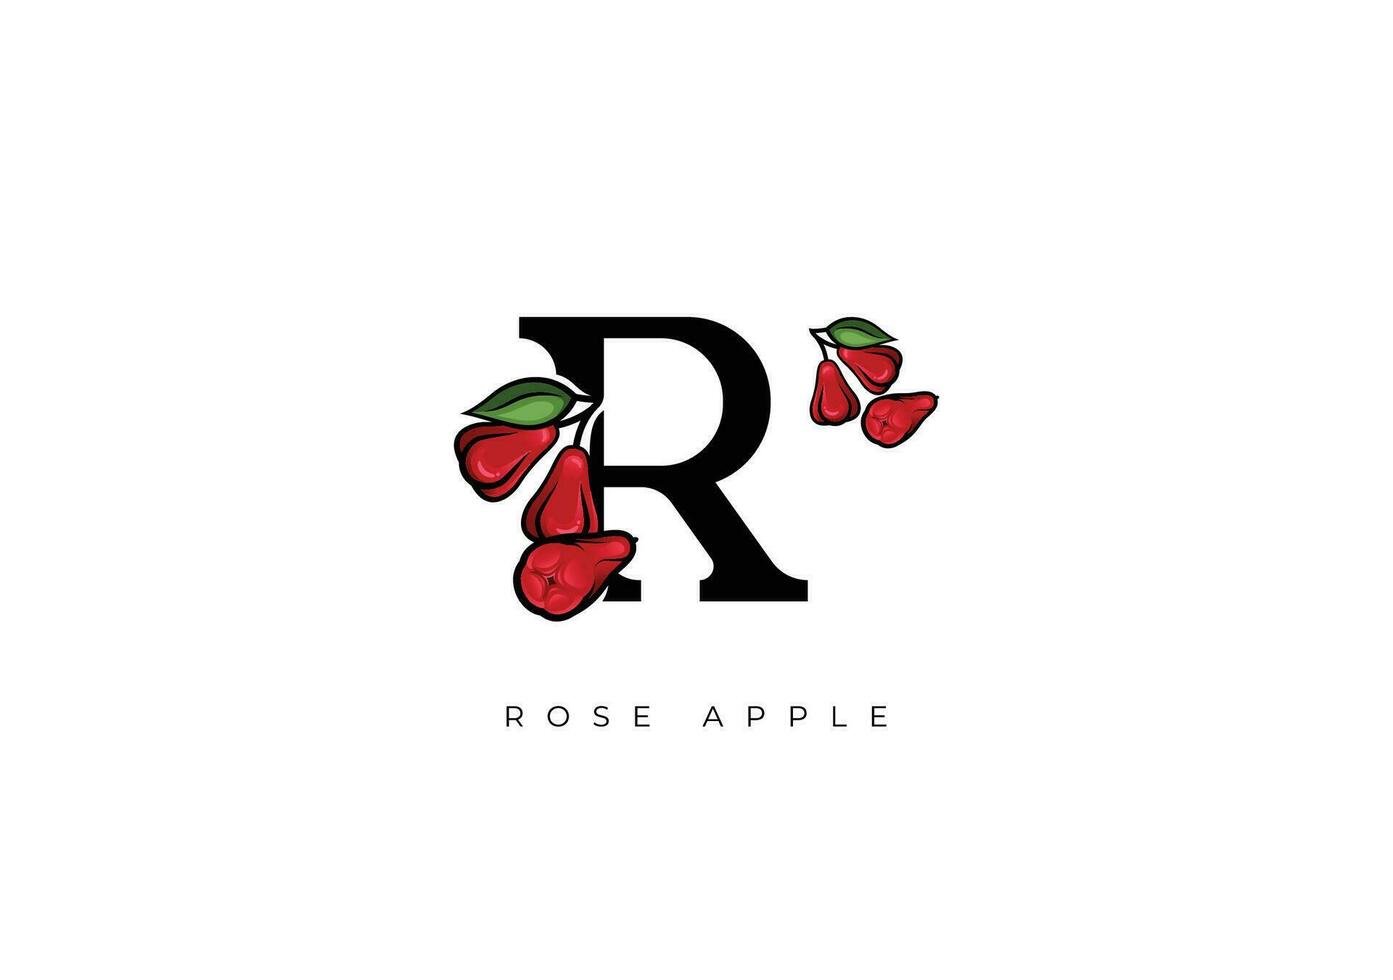 vermelho rosa maçã, água maçã fruta vetor, ótimo combinação do rosa maçã fruta símbolo com carta r vetor